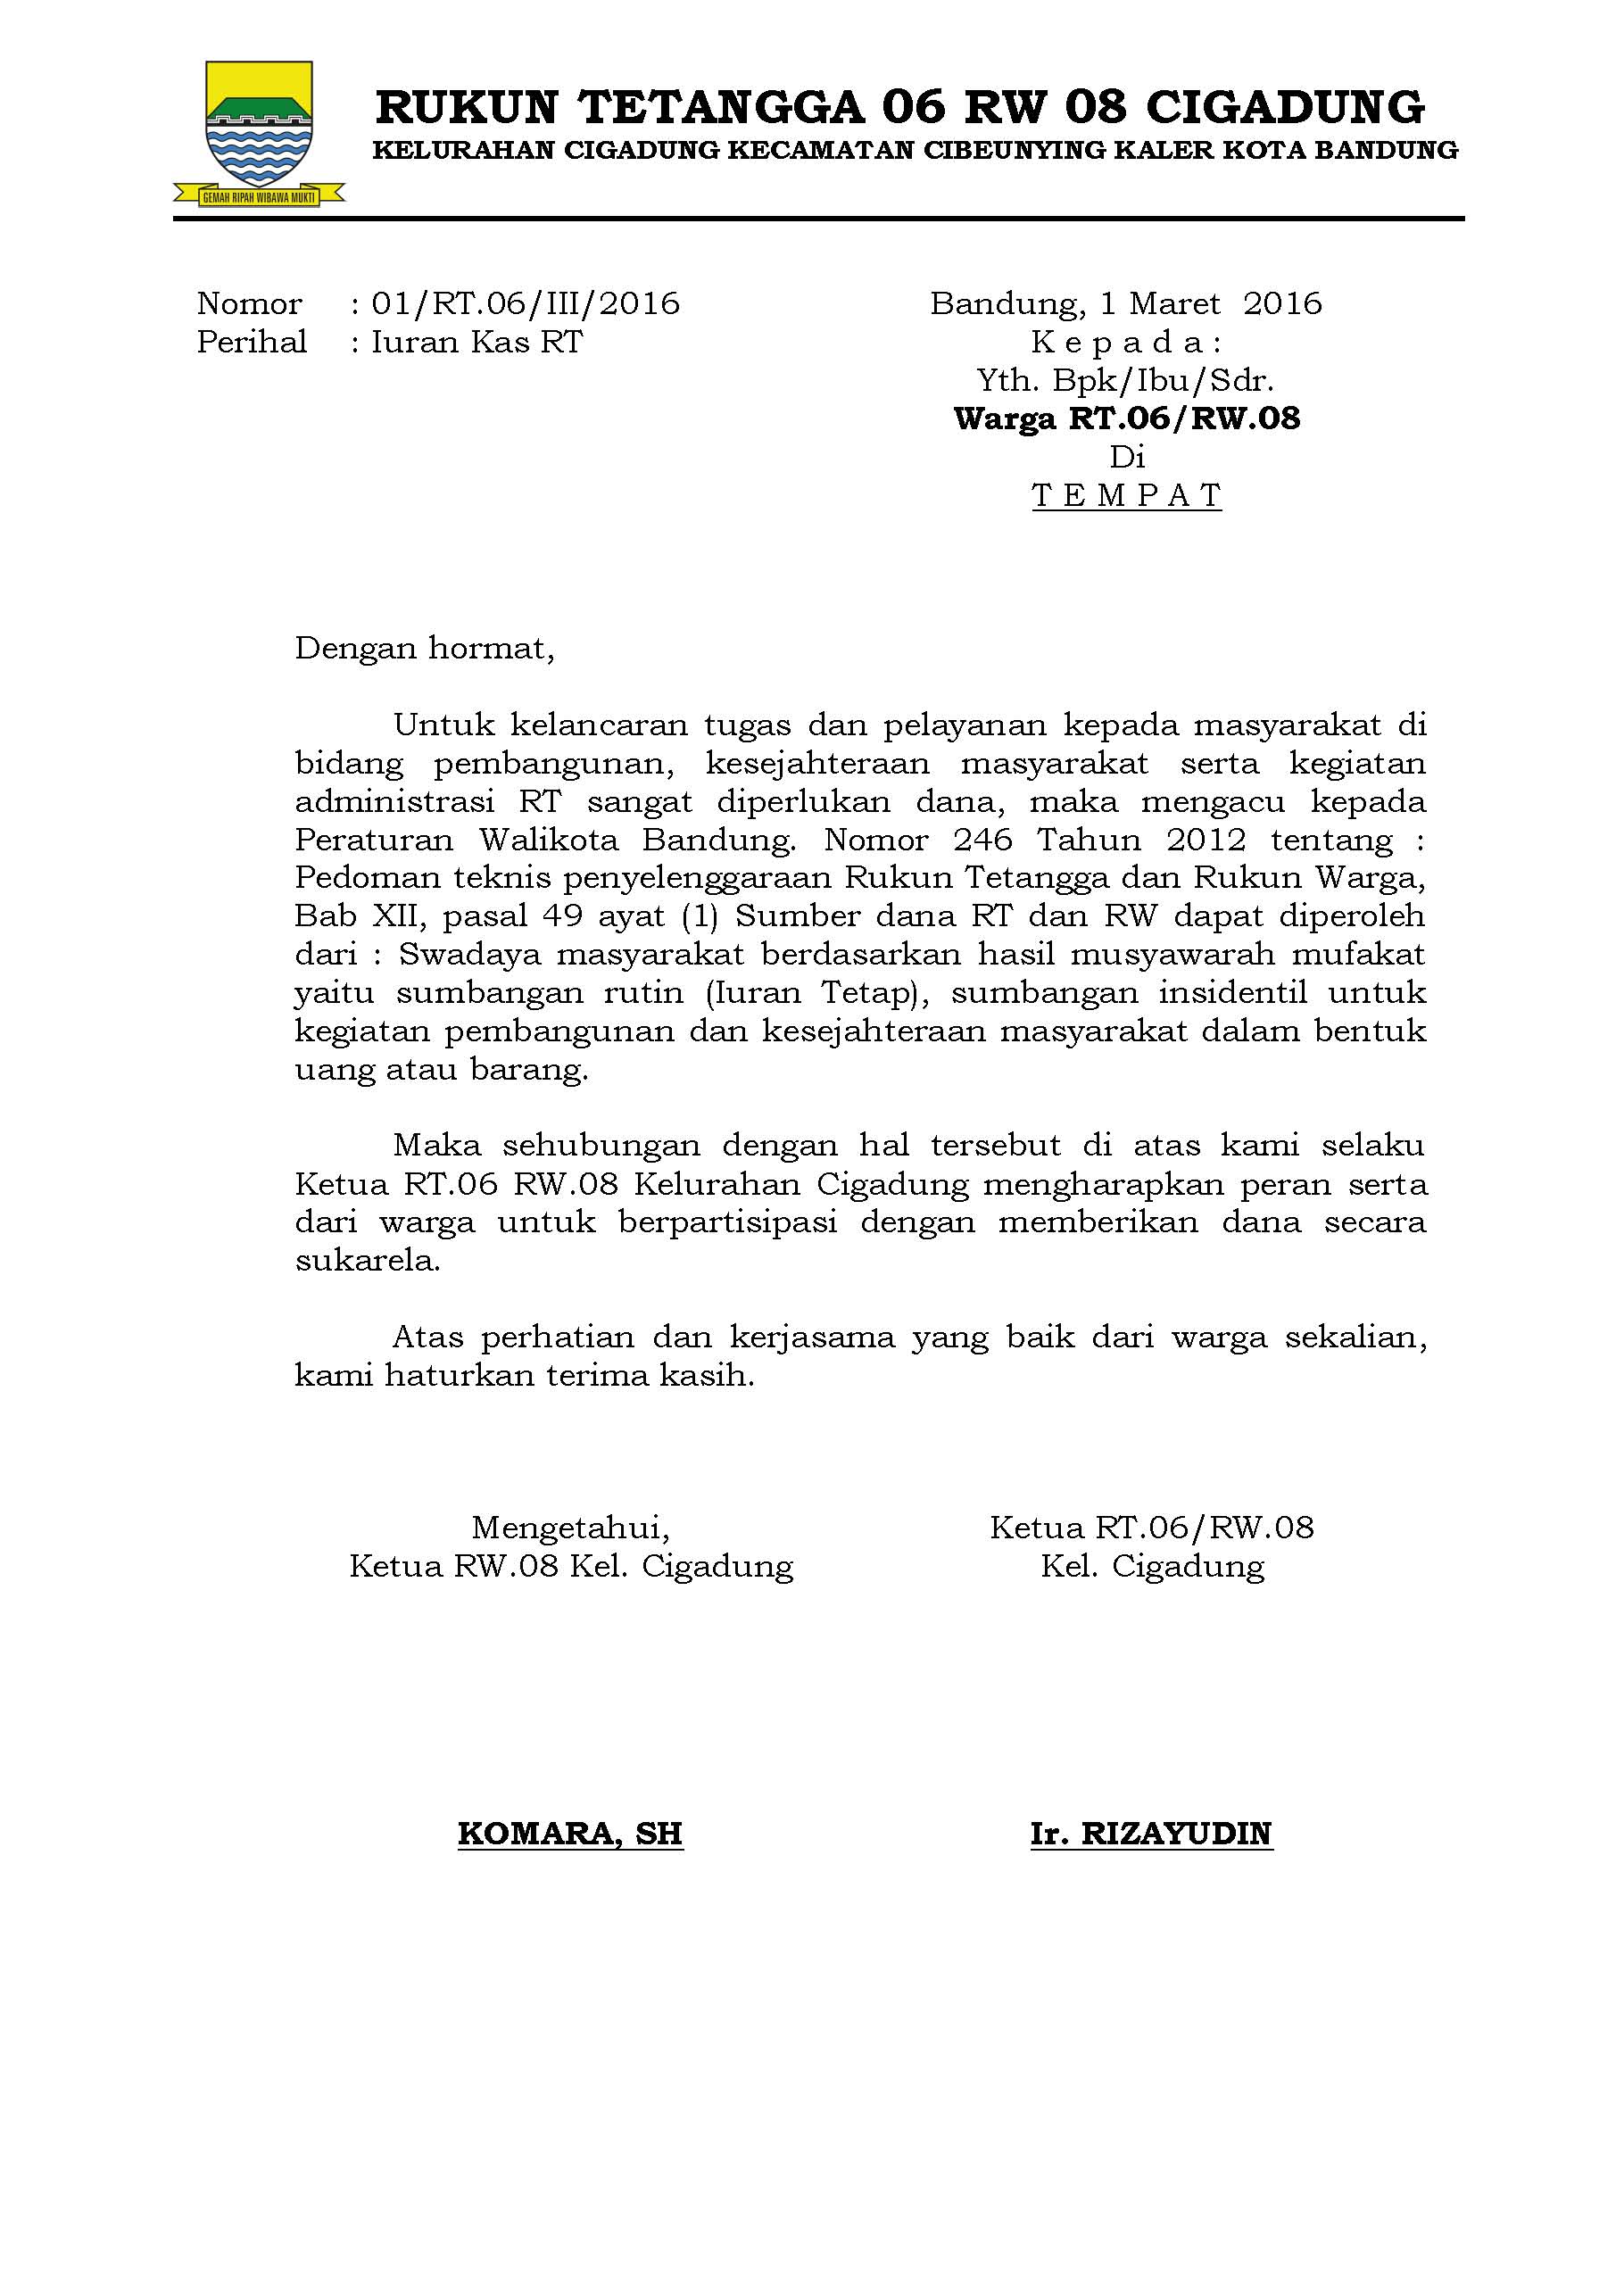 Detail Contoh Surat Pemberitahuan Iuran Bulanan Rt Koleksi Nomer